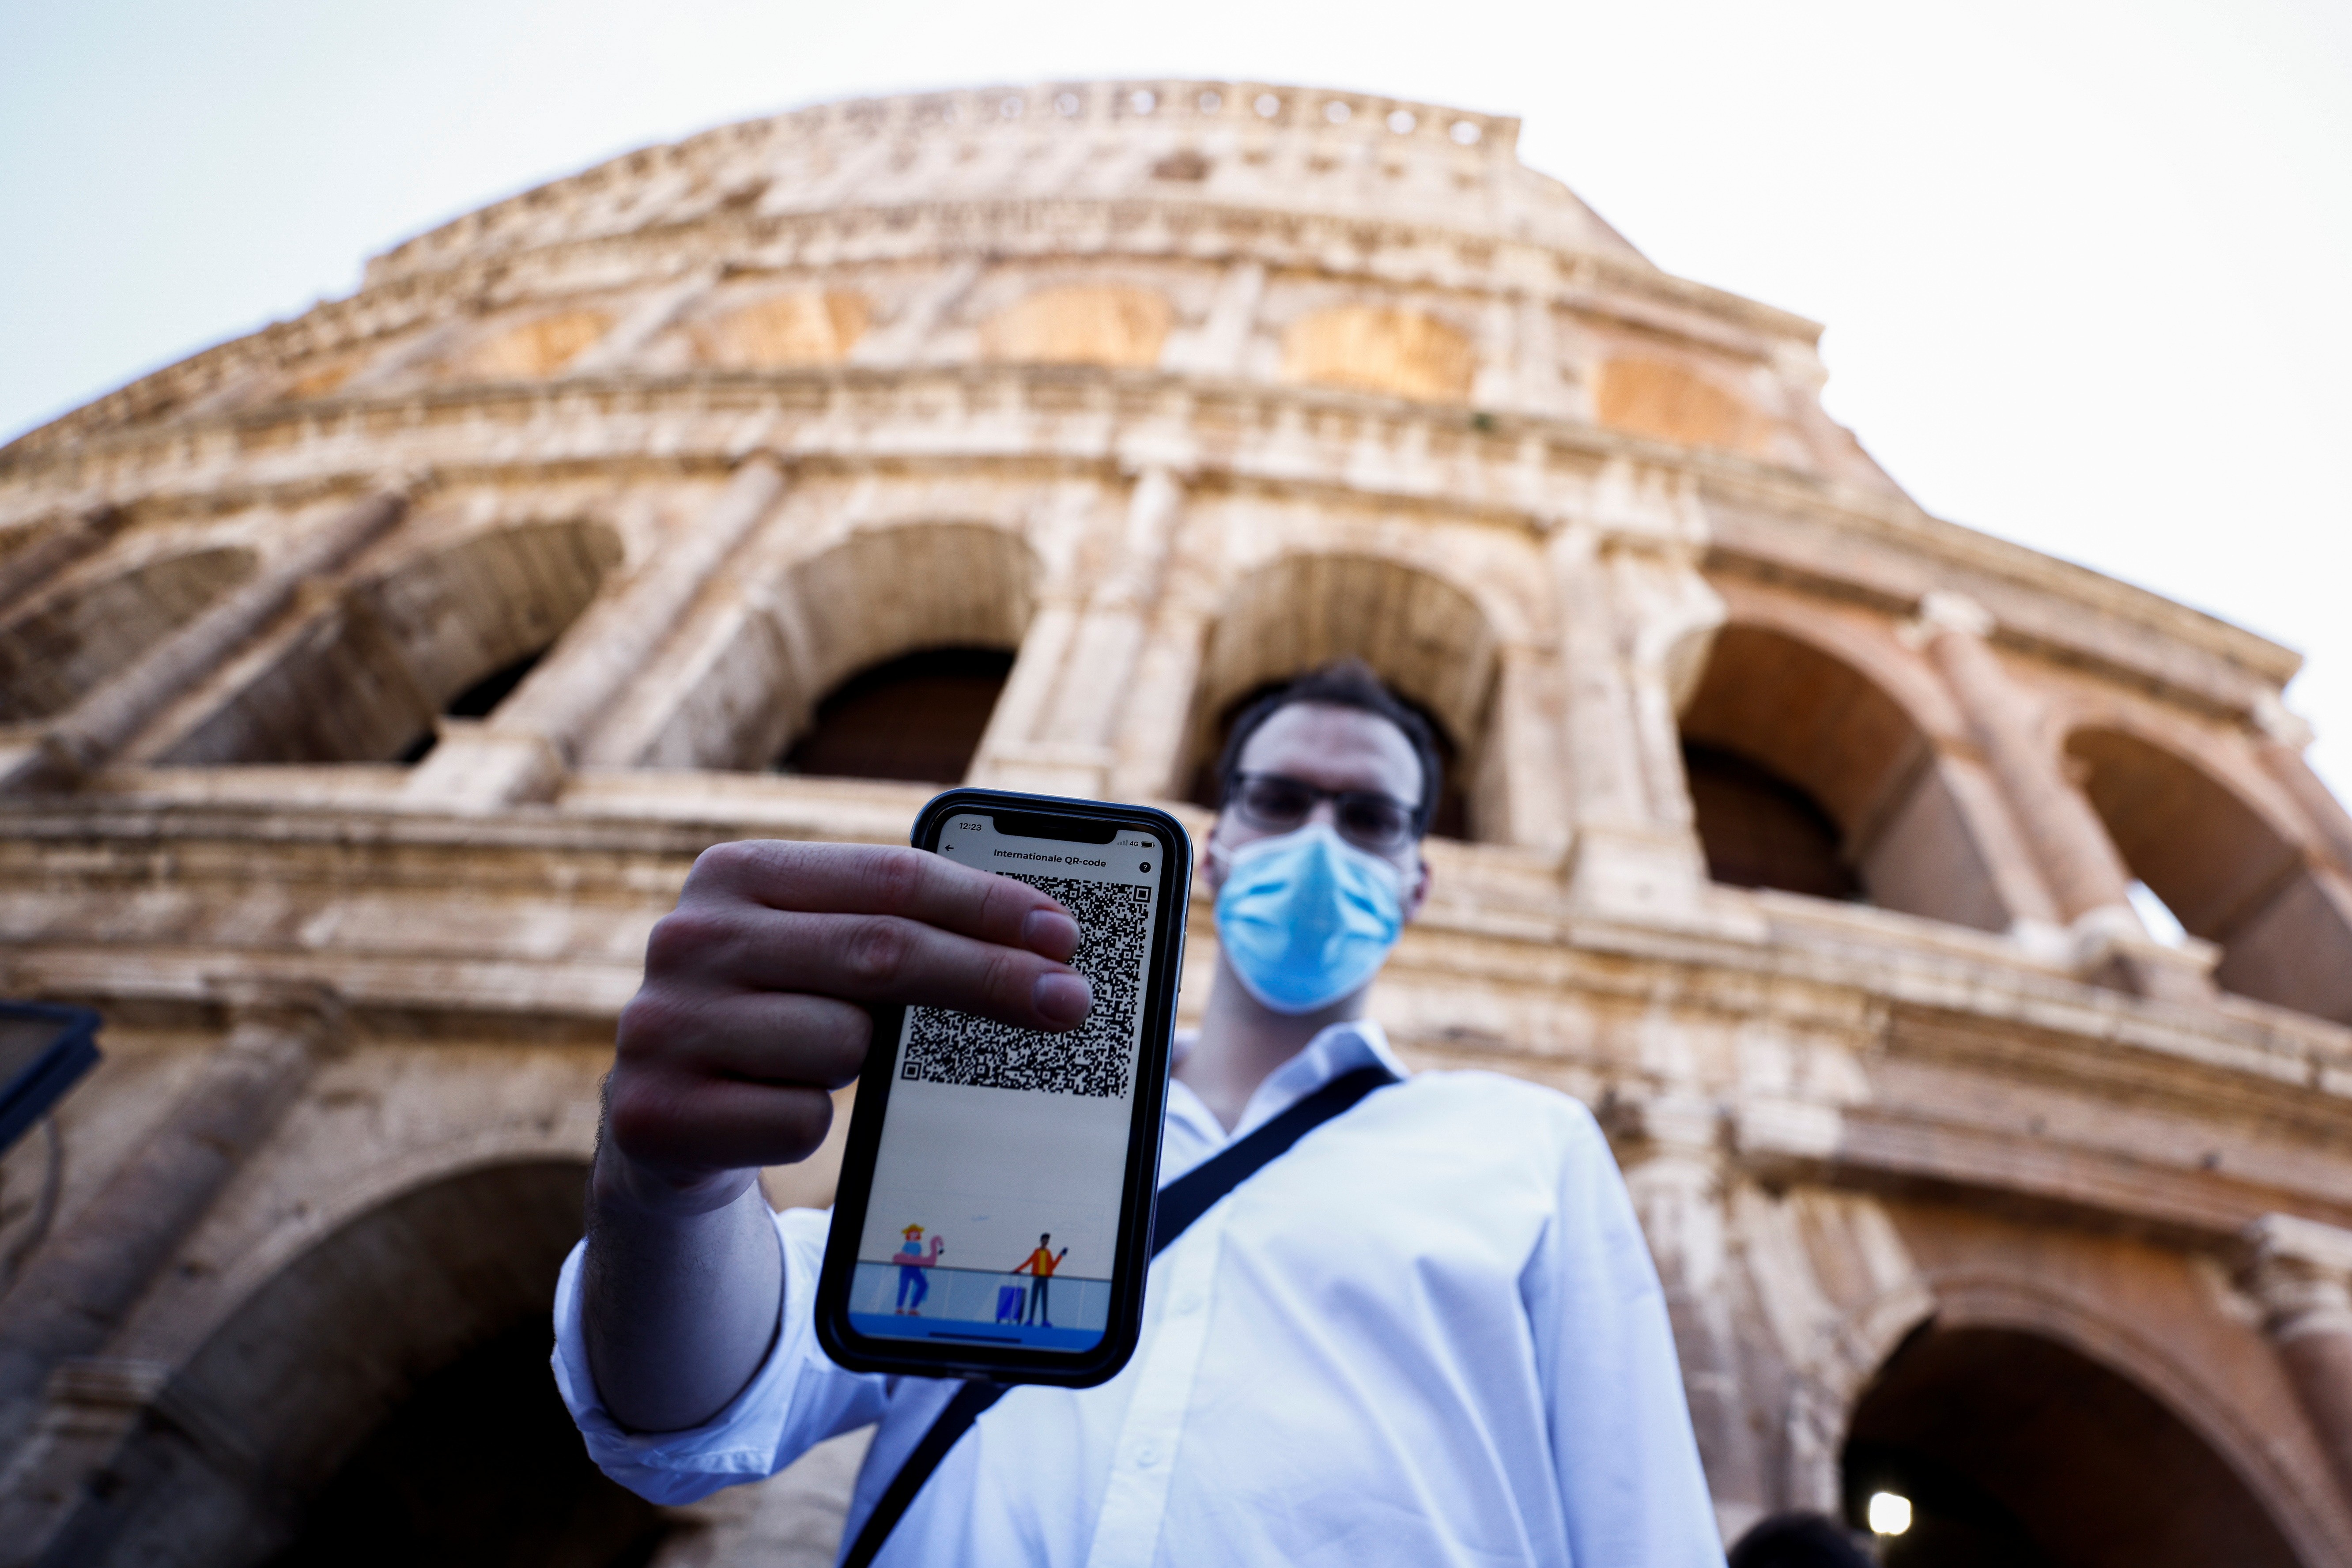 Itália começa a exigir 'passe de saúde' para ambientes fechados, transporte público e pontos turísticos thumbnail